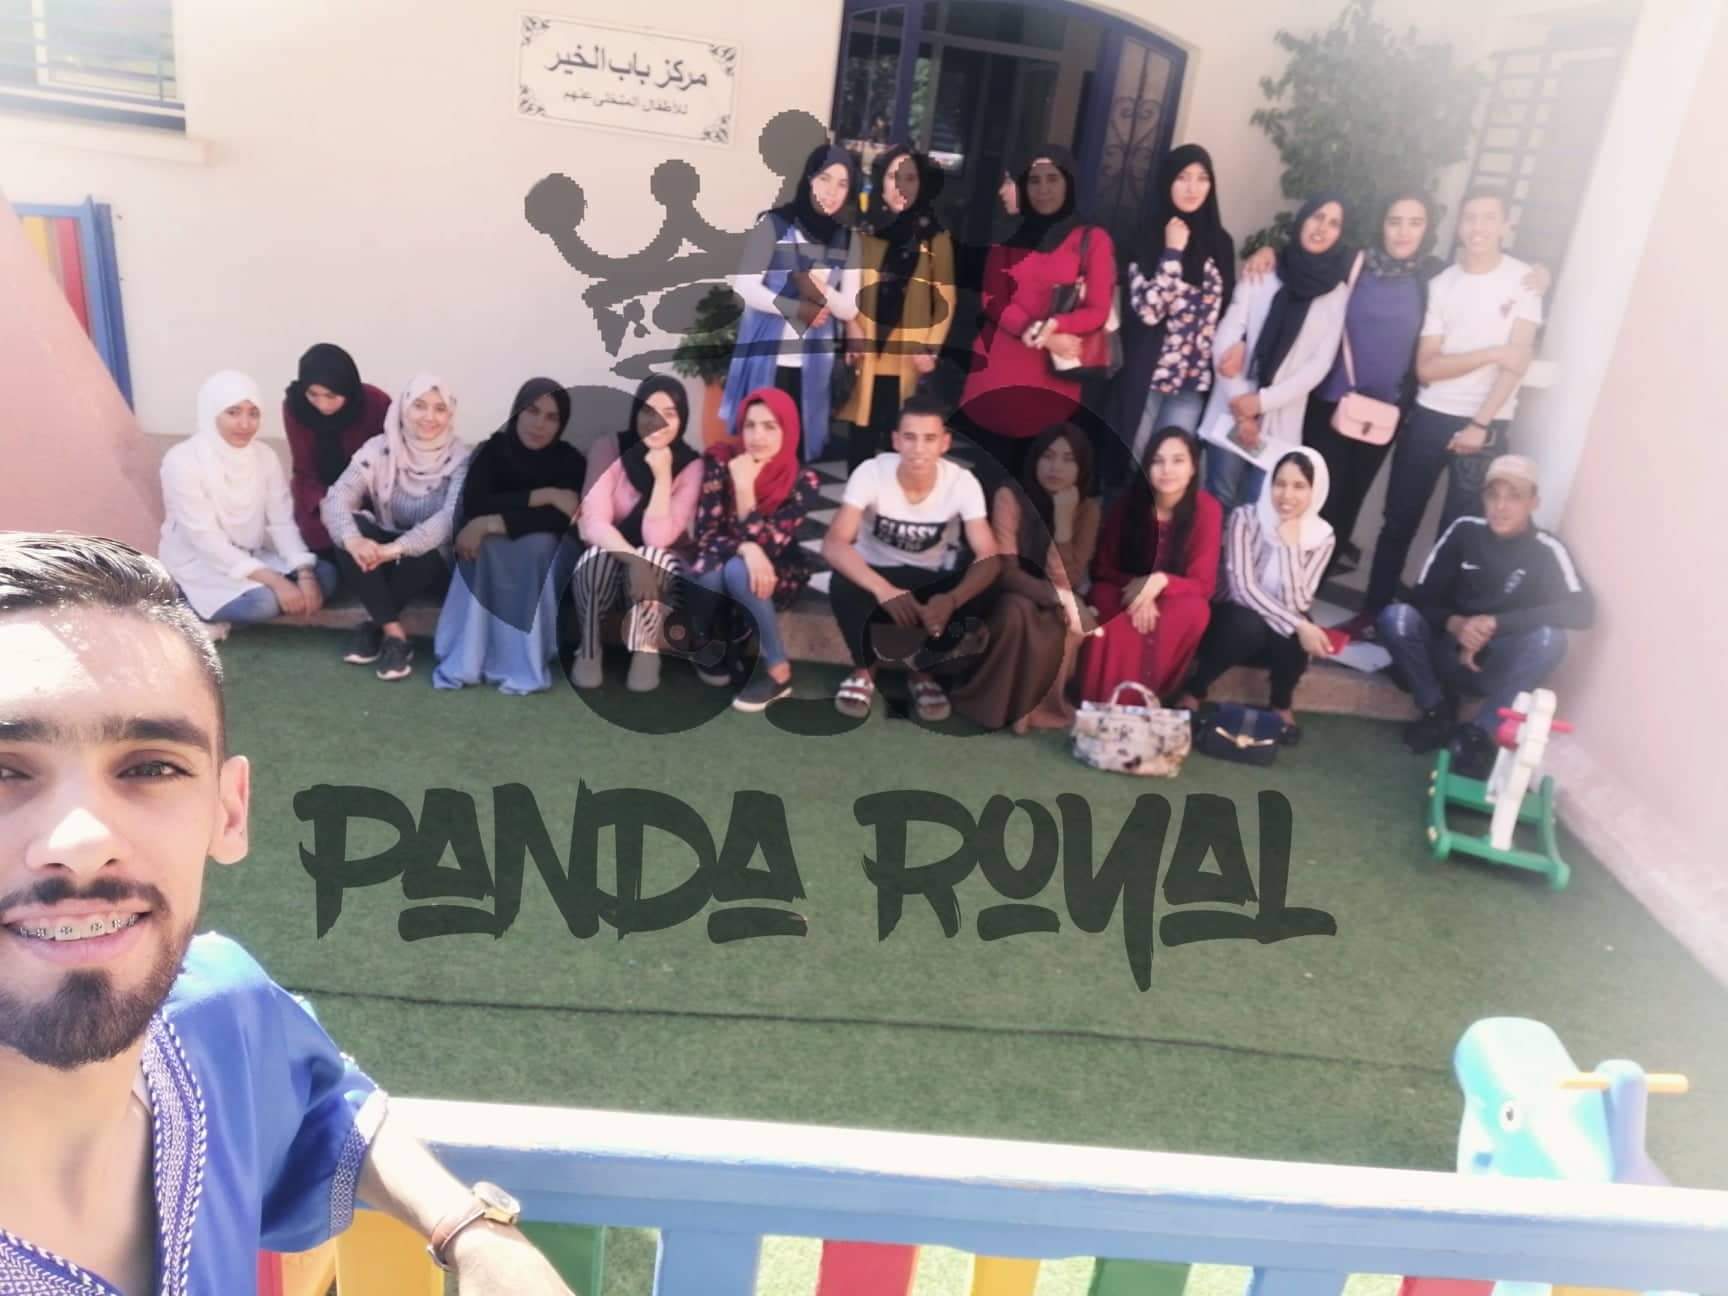 المجموعة الفيسبوكية “باندا روايال” بني ملال تنظم عملا خيريا لفائدة أيتام مركز باب الخير للأطفال المتخلى عنهم